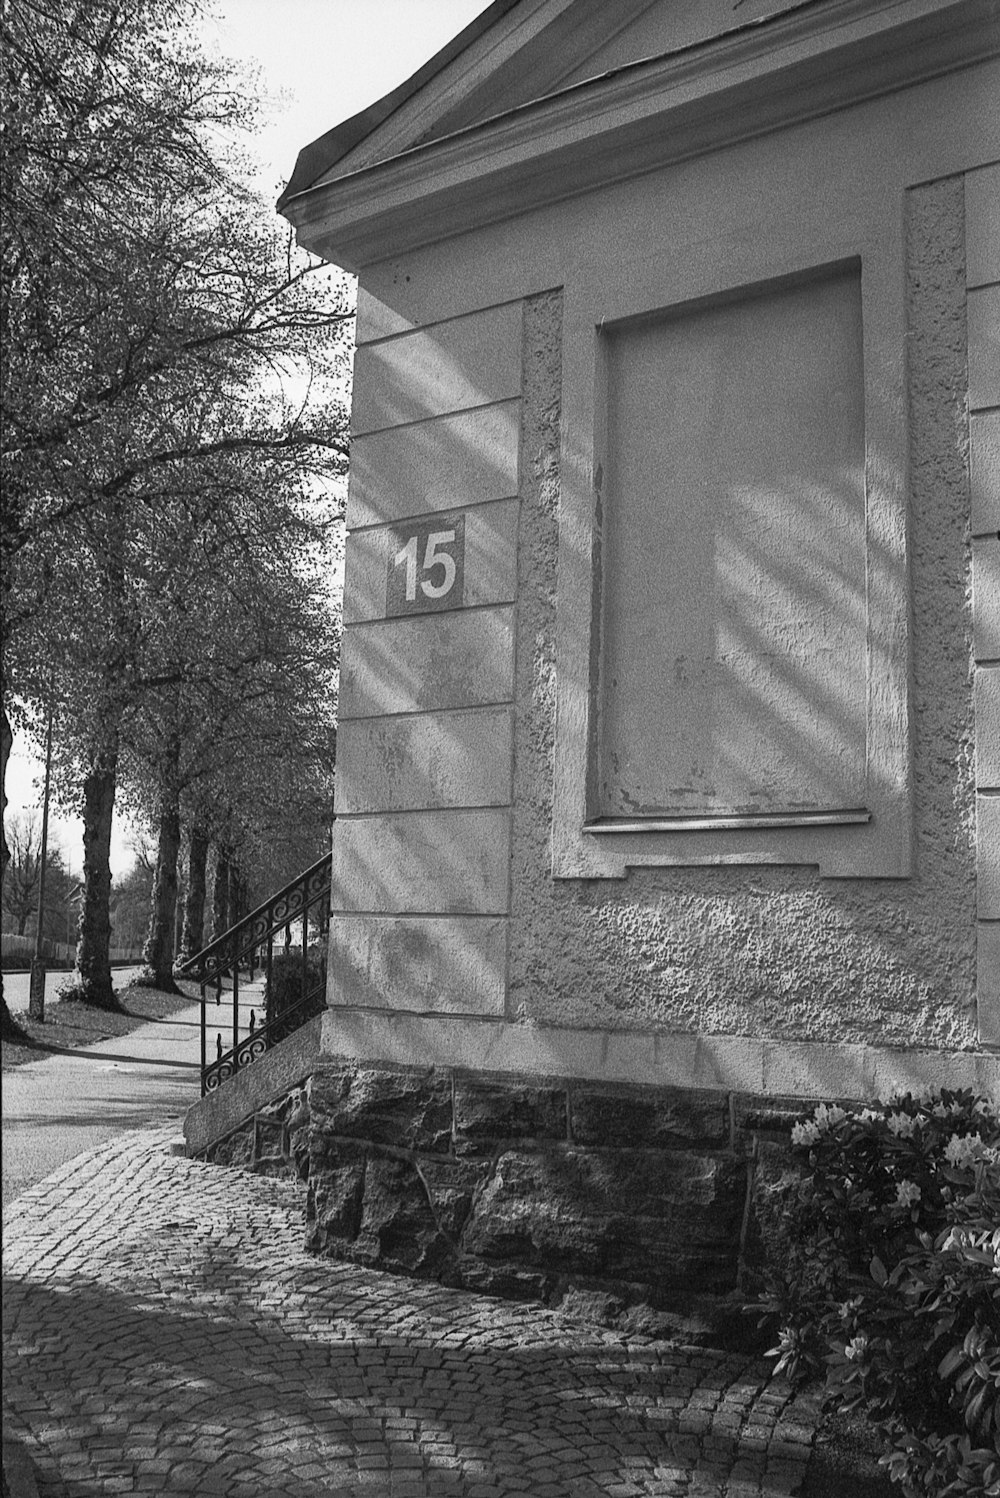 uma foto em preto e branco de um prédio com um número